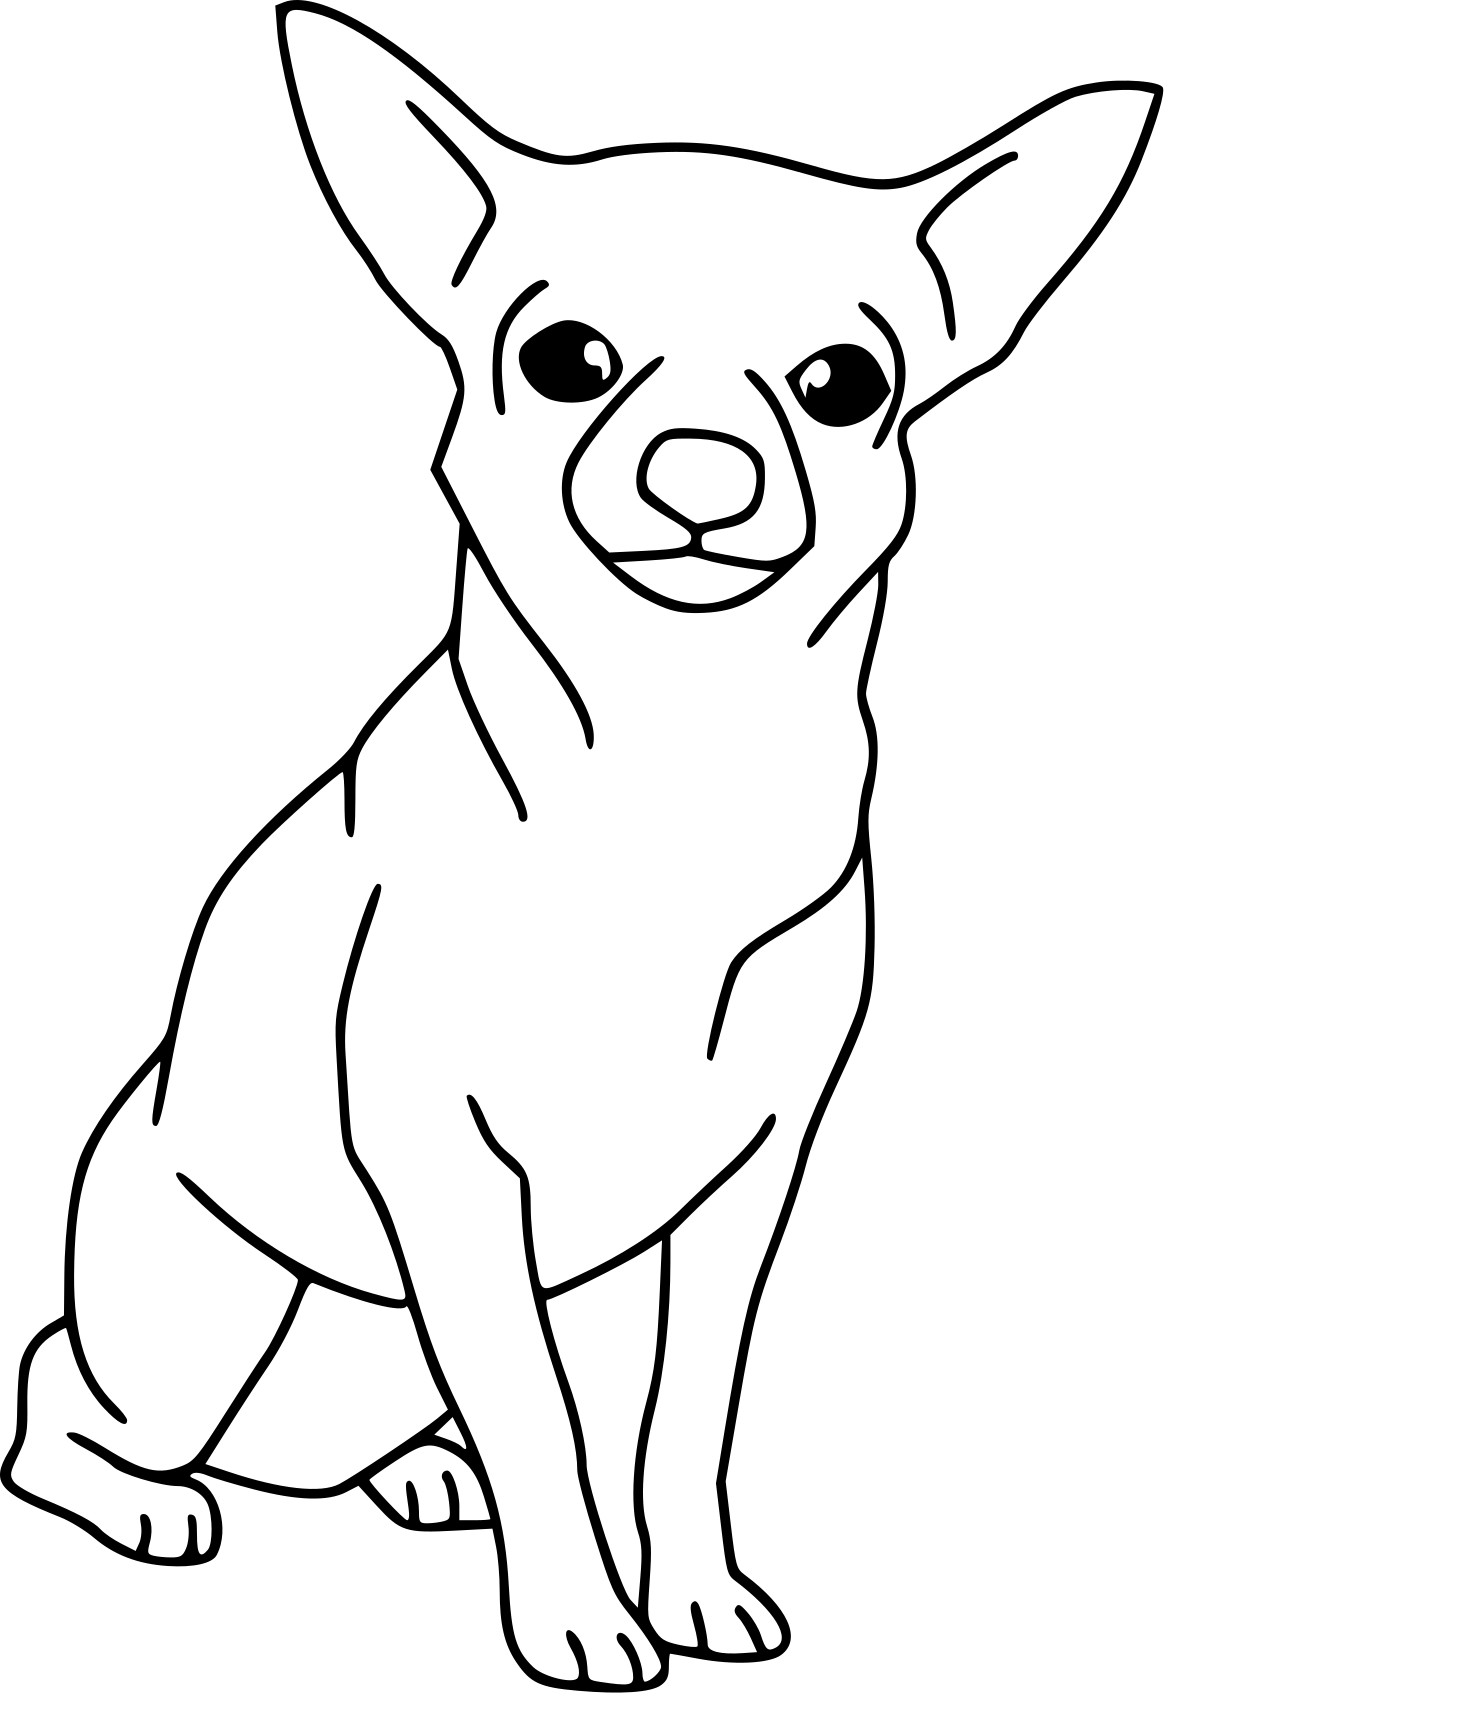 Disegno di Cane Chihuahua da colorare